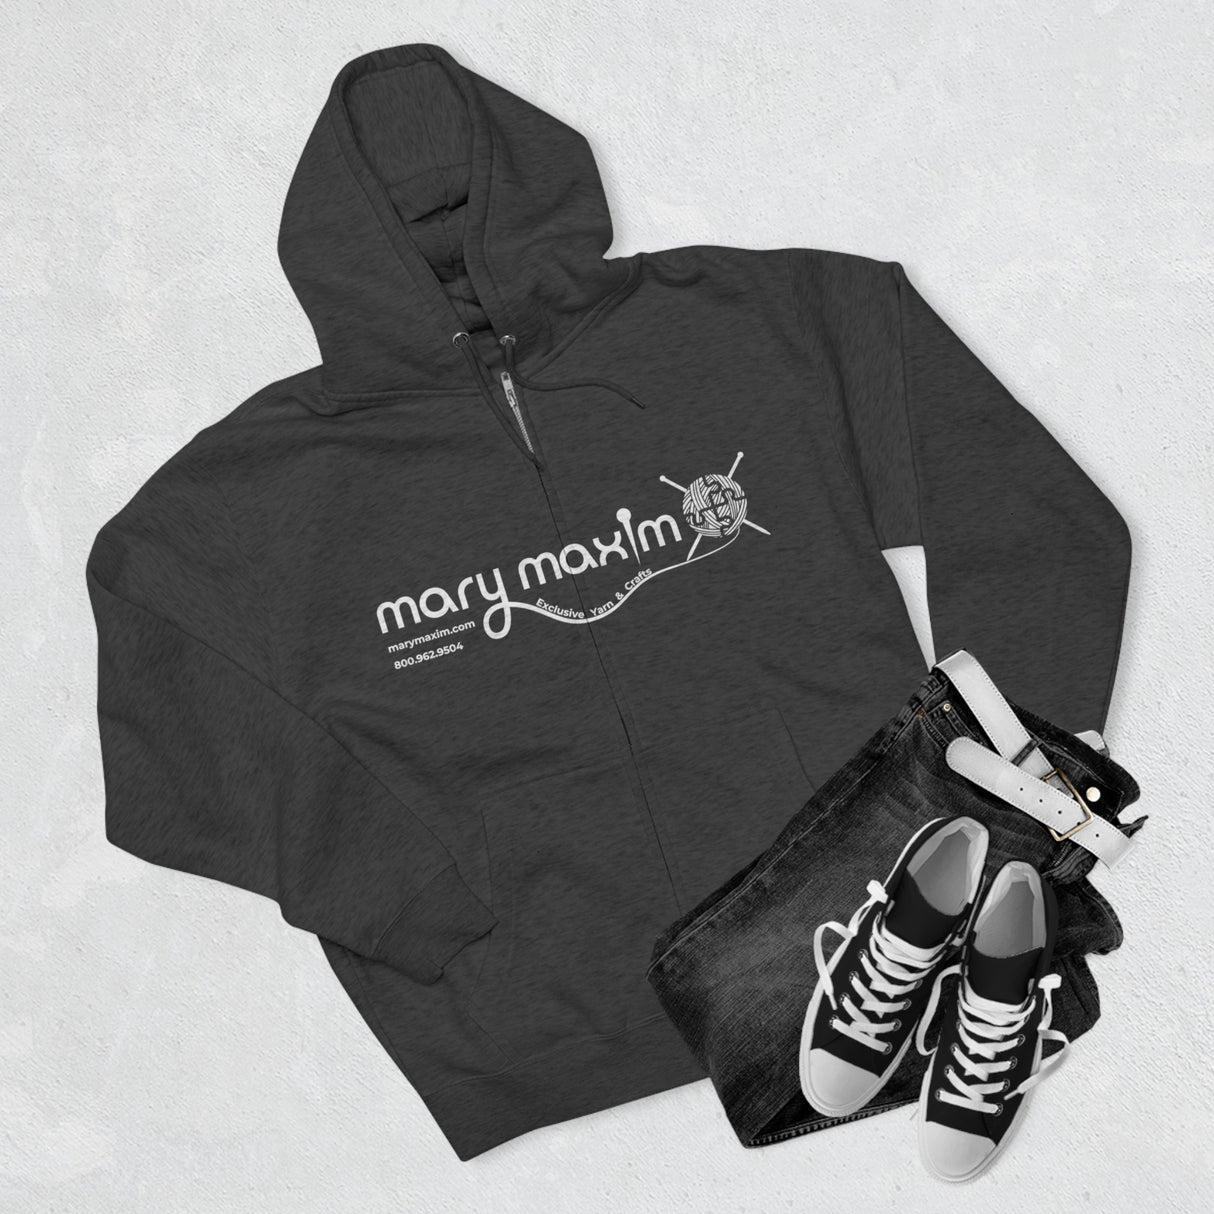 Mary Maxim Full Zip Hoodie - White & Black Logo - Unisex